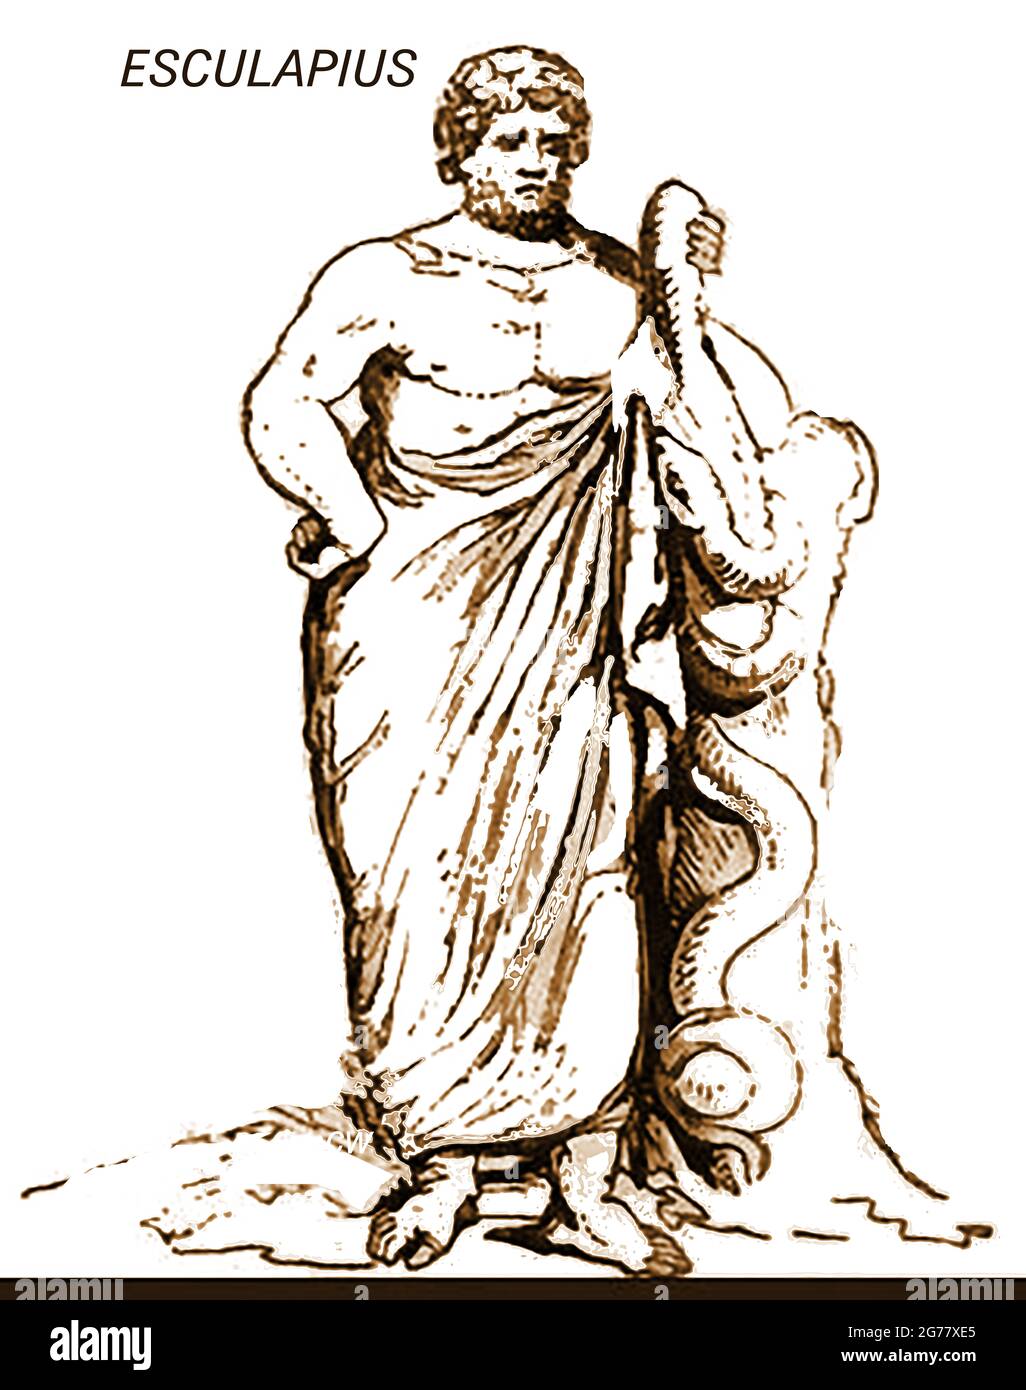 Eine 1839 Darstellung der mythologischen Figur Esculapius (a.k.a. Aesculapius / Asclepius / Hepius / Ἀσκληπιός ,Asklēpiós oder paean 'der Heiler') Apollos Sohn, Seine Kinder waren auch Heiler (seine Göttentöchter waren Hygienia oder 'Hygiene', - Sauberkeit, IASO - Erholung, Aceso - Heilung, Aegle - allgemeine gute Gesundheit und Panacea - universelle Heilmittel). Der römisch-etruskische äquivalentgott war Vediovis & in Ägypten Imhotep. Er besitzt einen Kadukeus, der dem von Hermes ähnelt. Seine Ärzte und Begleiter wurden als die Therapeuten von Asclepius bekannt. Stockfoto